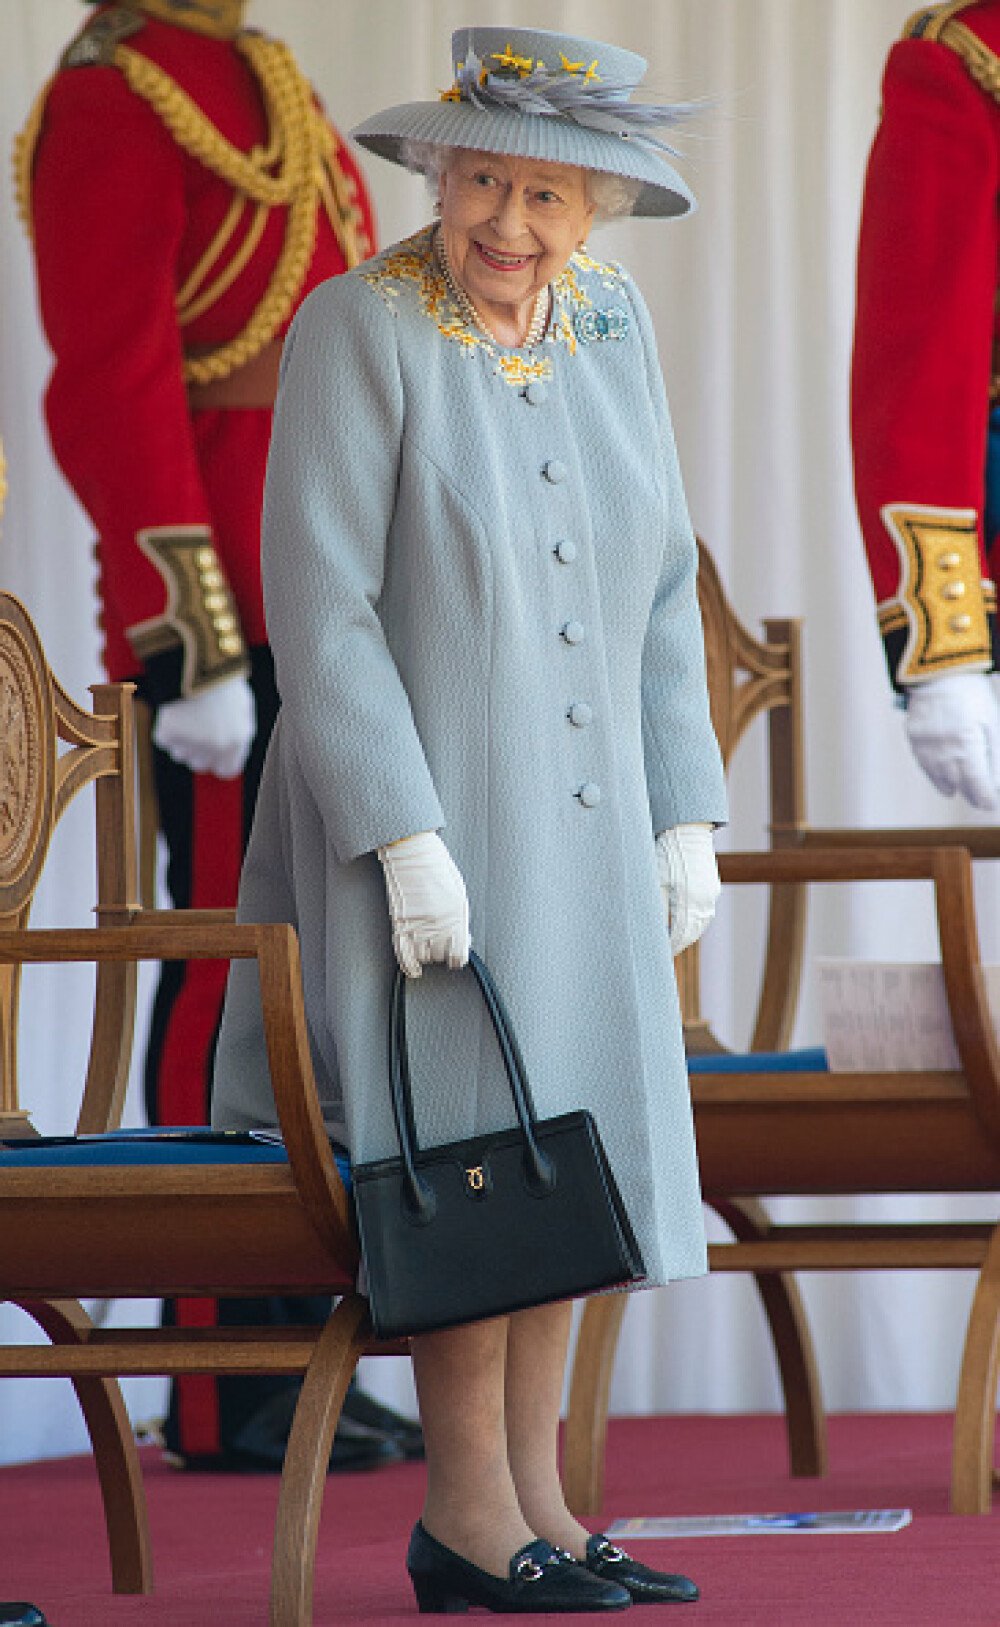 Paradă militară la Windsor. A fost celebrată oficial ziua de naştere a reginei Elisabeta a II-a - Imaginea 2